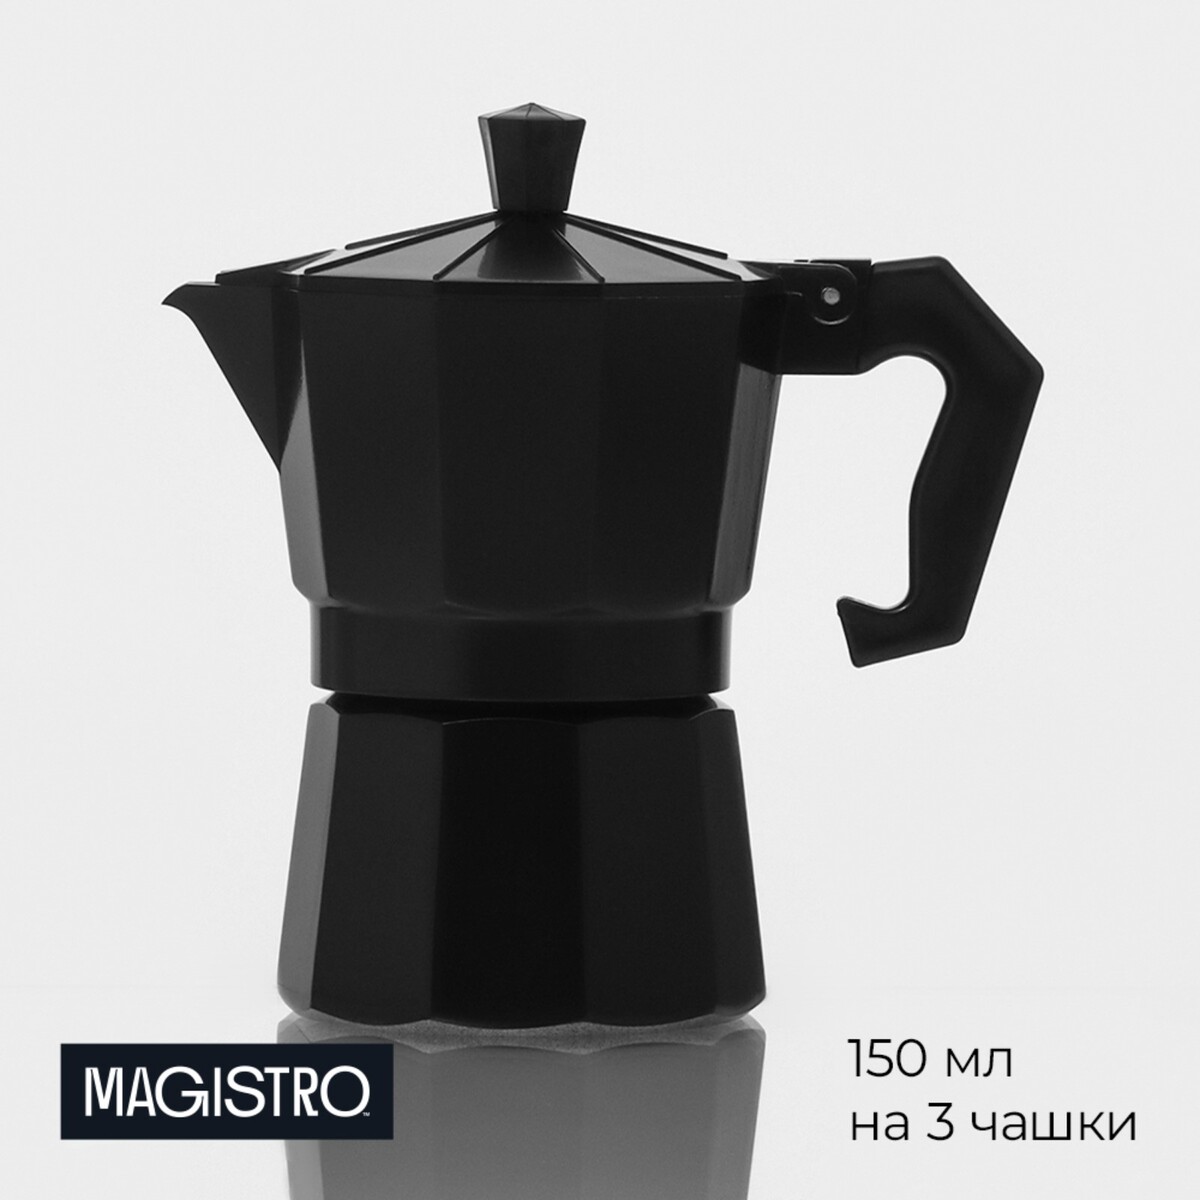 Кофеварка гейзерная magistro alum black, на 3 чашки, 150 мл кофеварка гейзерная magistro classic на 4 чашки 200 мл нержавеющая сталь